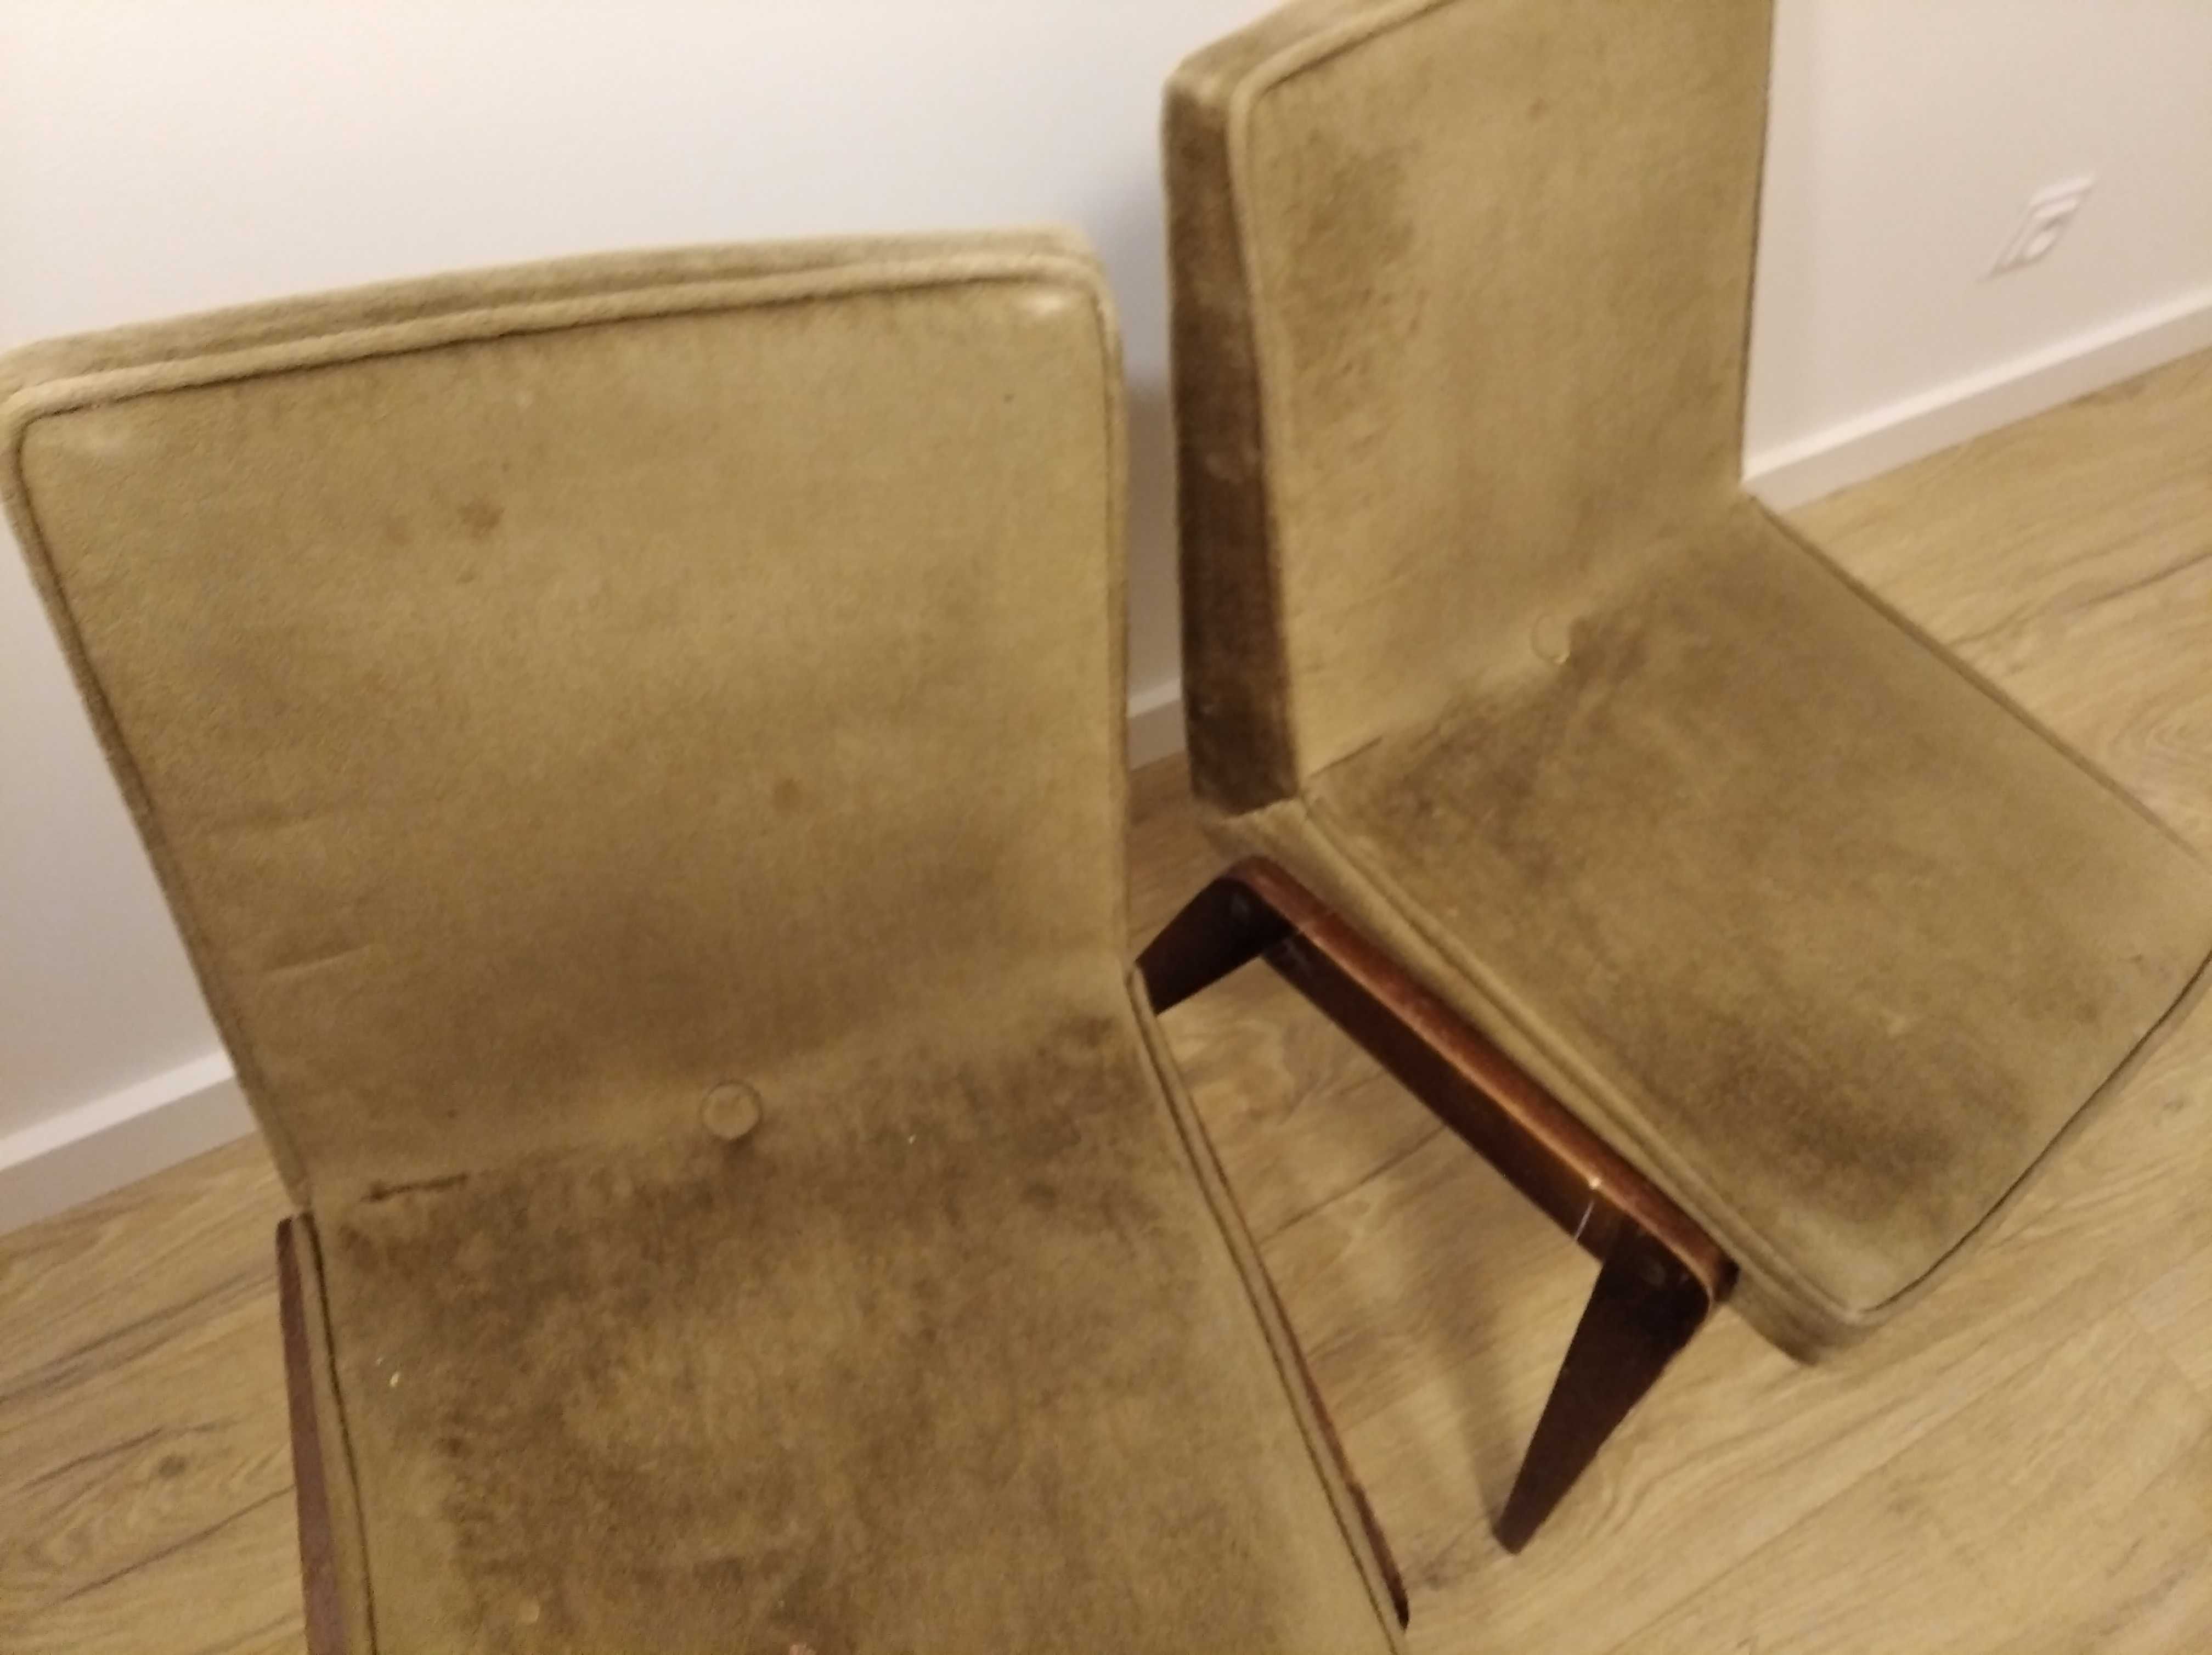 Krzesła PRL model AGA, fotel 366 Chierowski - 2 sztuki do renowacji